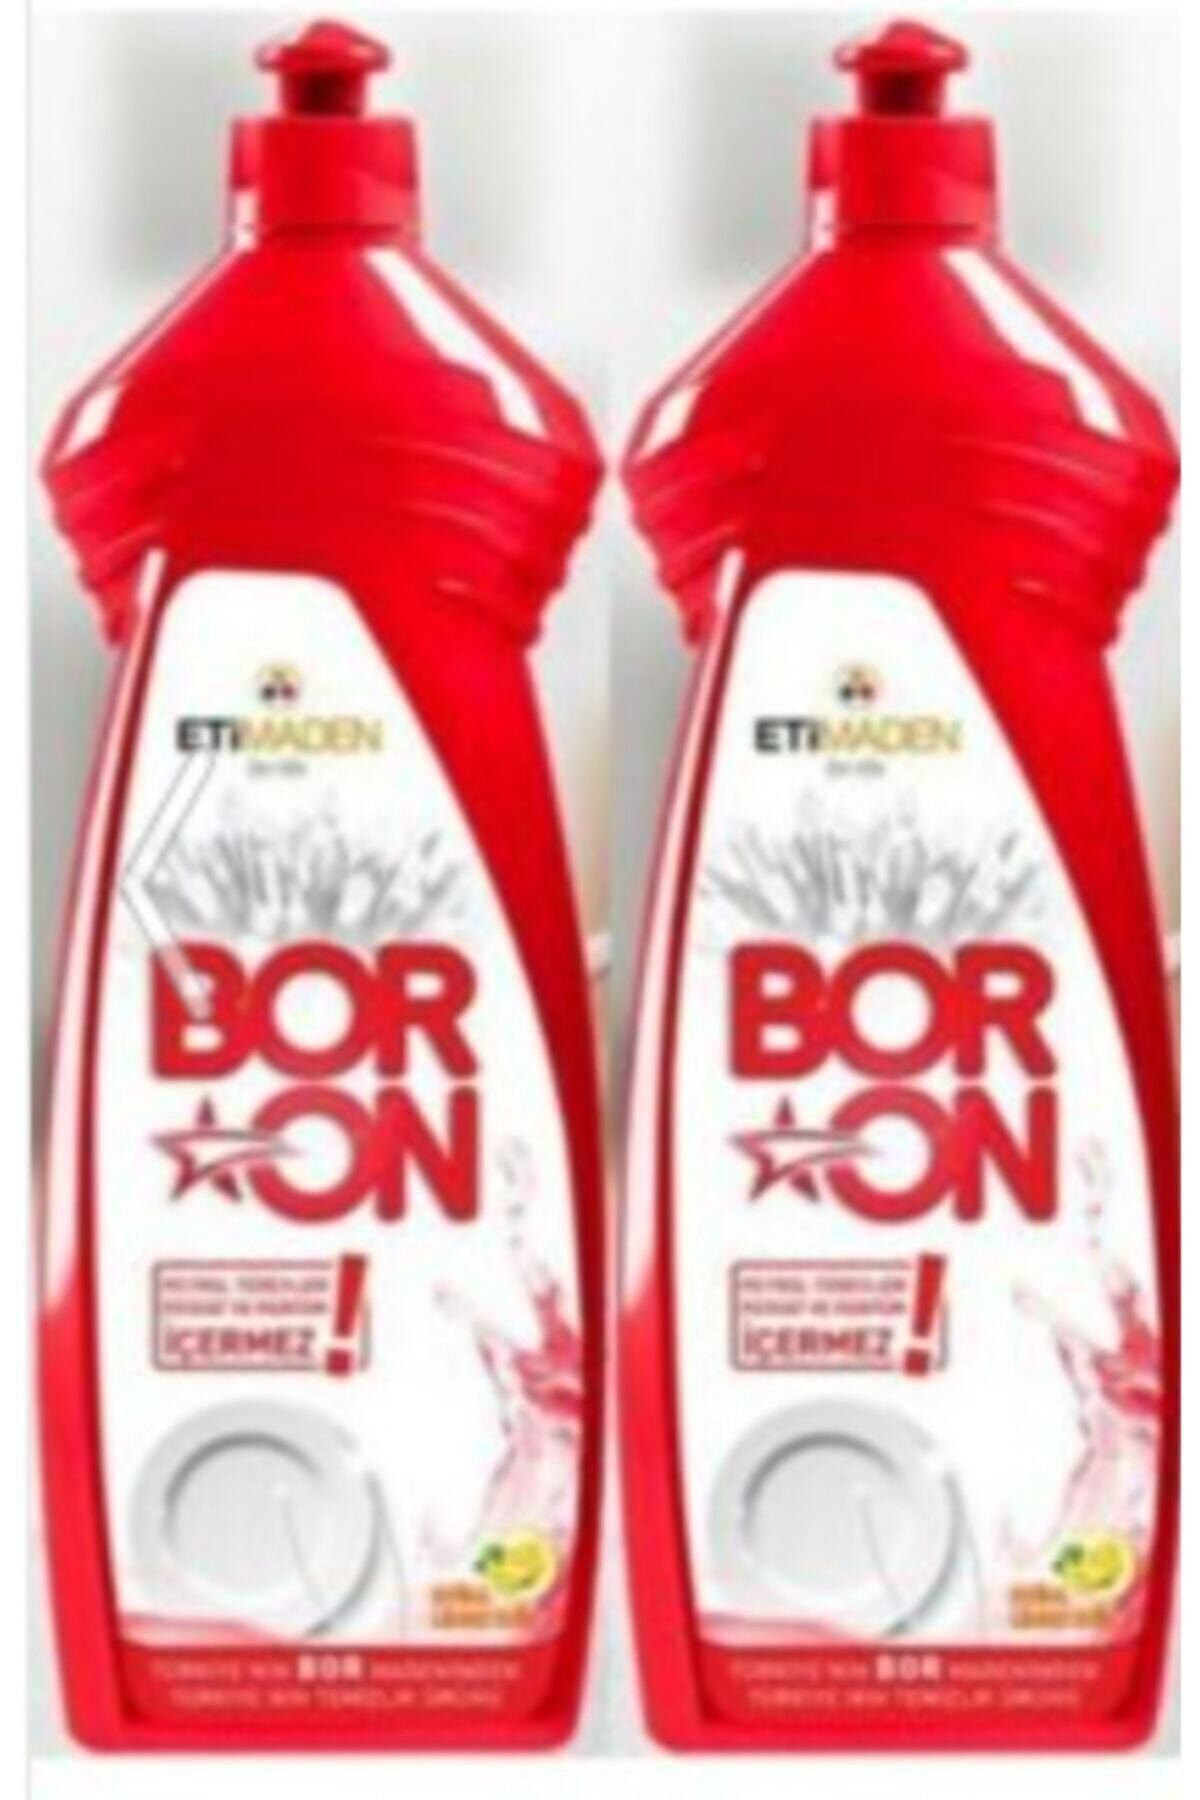 Boron Boron Elde Yıkama Bulaşık Temizlik Ürünü 650 ml 2 Adet